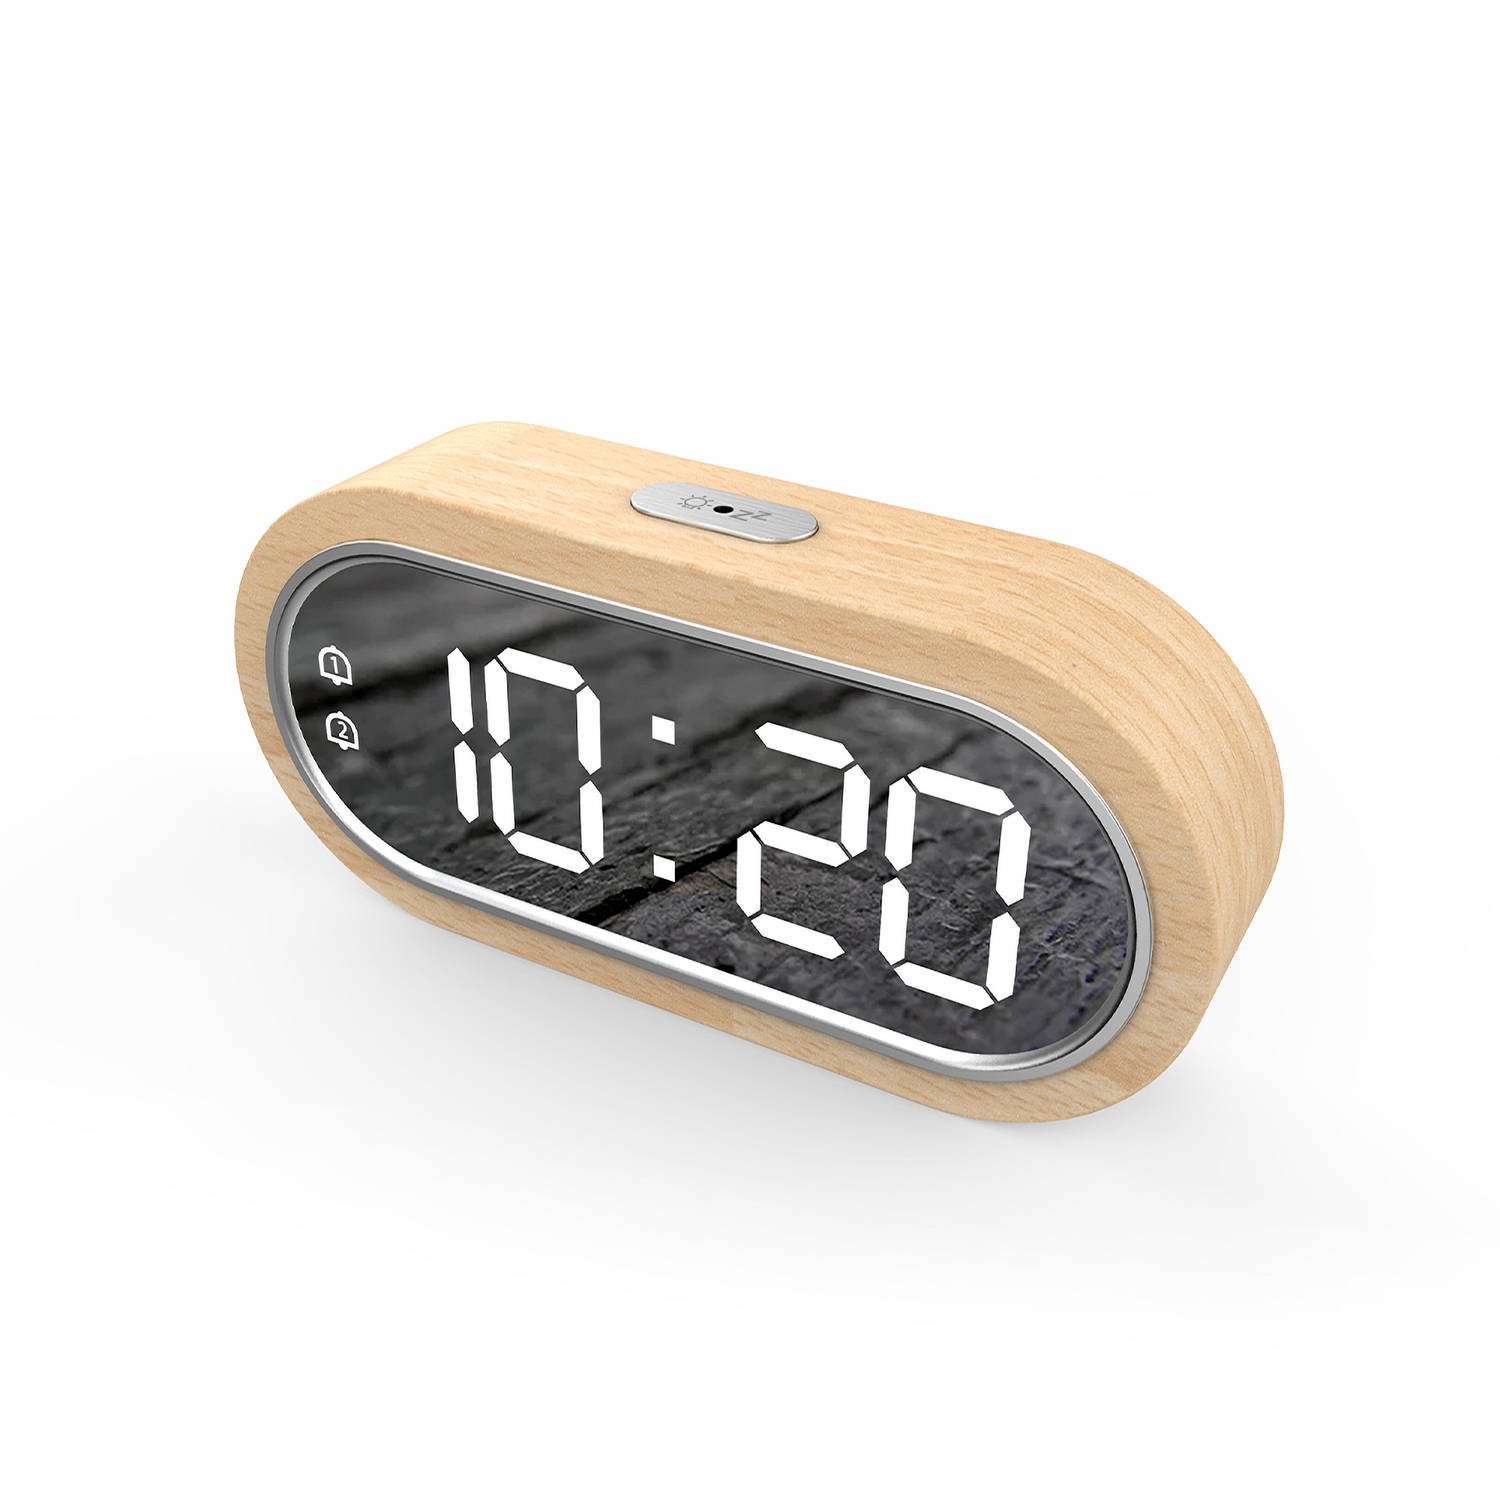 Attalos Digitale Wekker - Twee alarmen - Hout - Dimbaar - USB & AAA batterij - Voor volwassenen & kinderen - tafelklok - reiswekker & kinderwekker - alarmklok